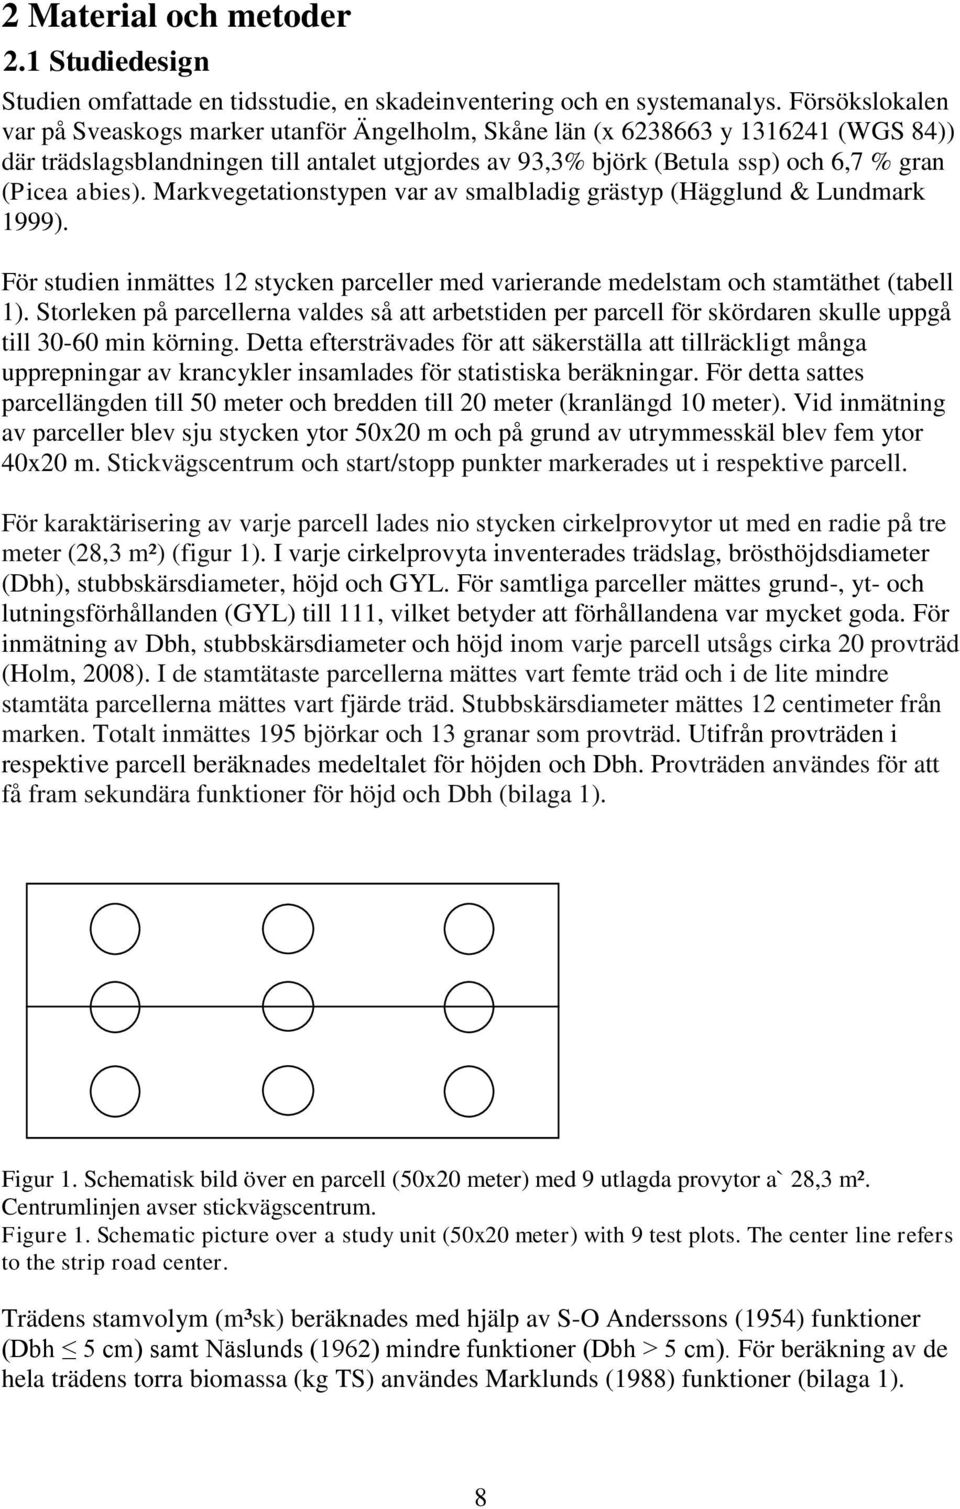 abies). Markvegetationstypen var av smalbladig grästyp (Hägglund & Lundmark 1999). För studien inmättes 12 stycken parceller med varierande medelstam och stamtäthet (tabell 1).